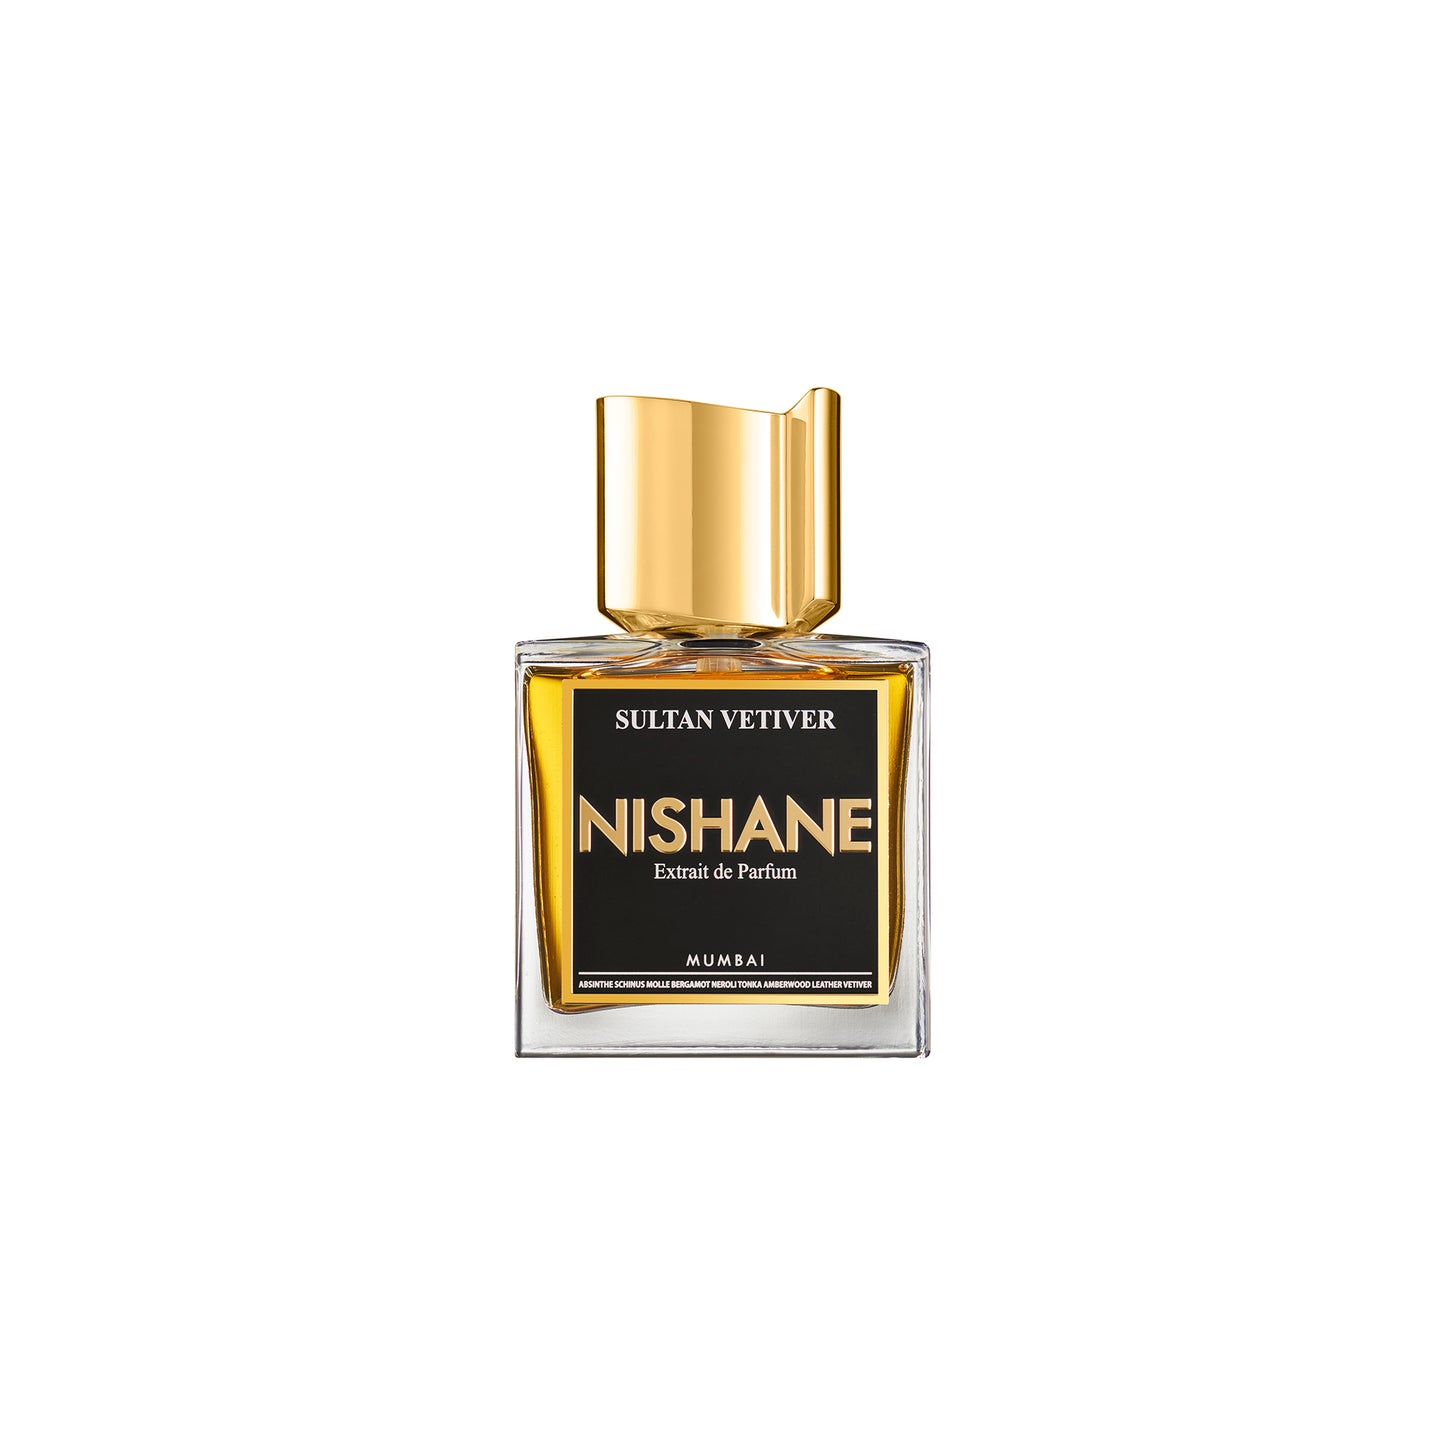 Sultan Vetiver 1.7oz Extrait de Parfum